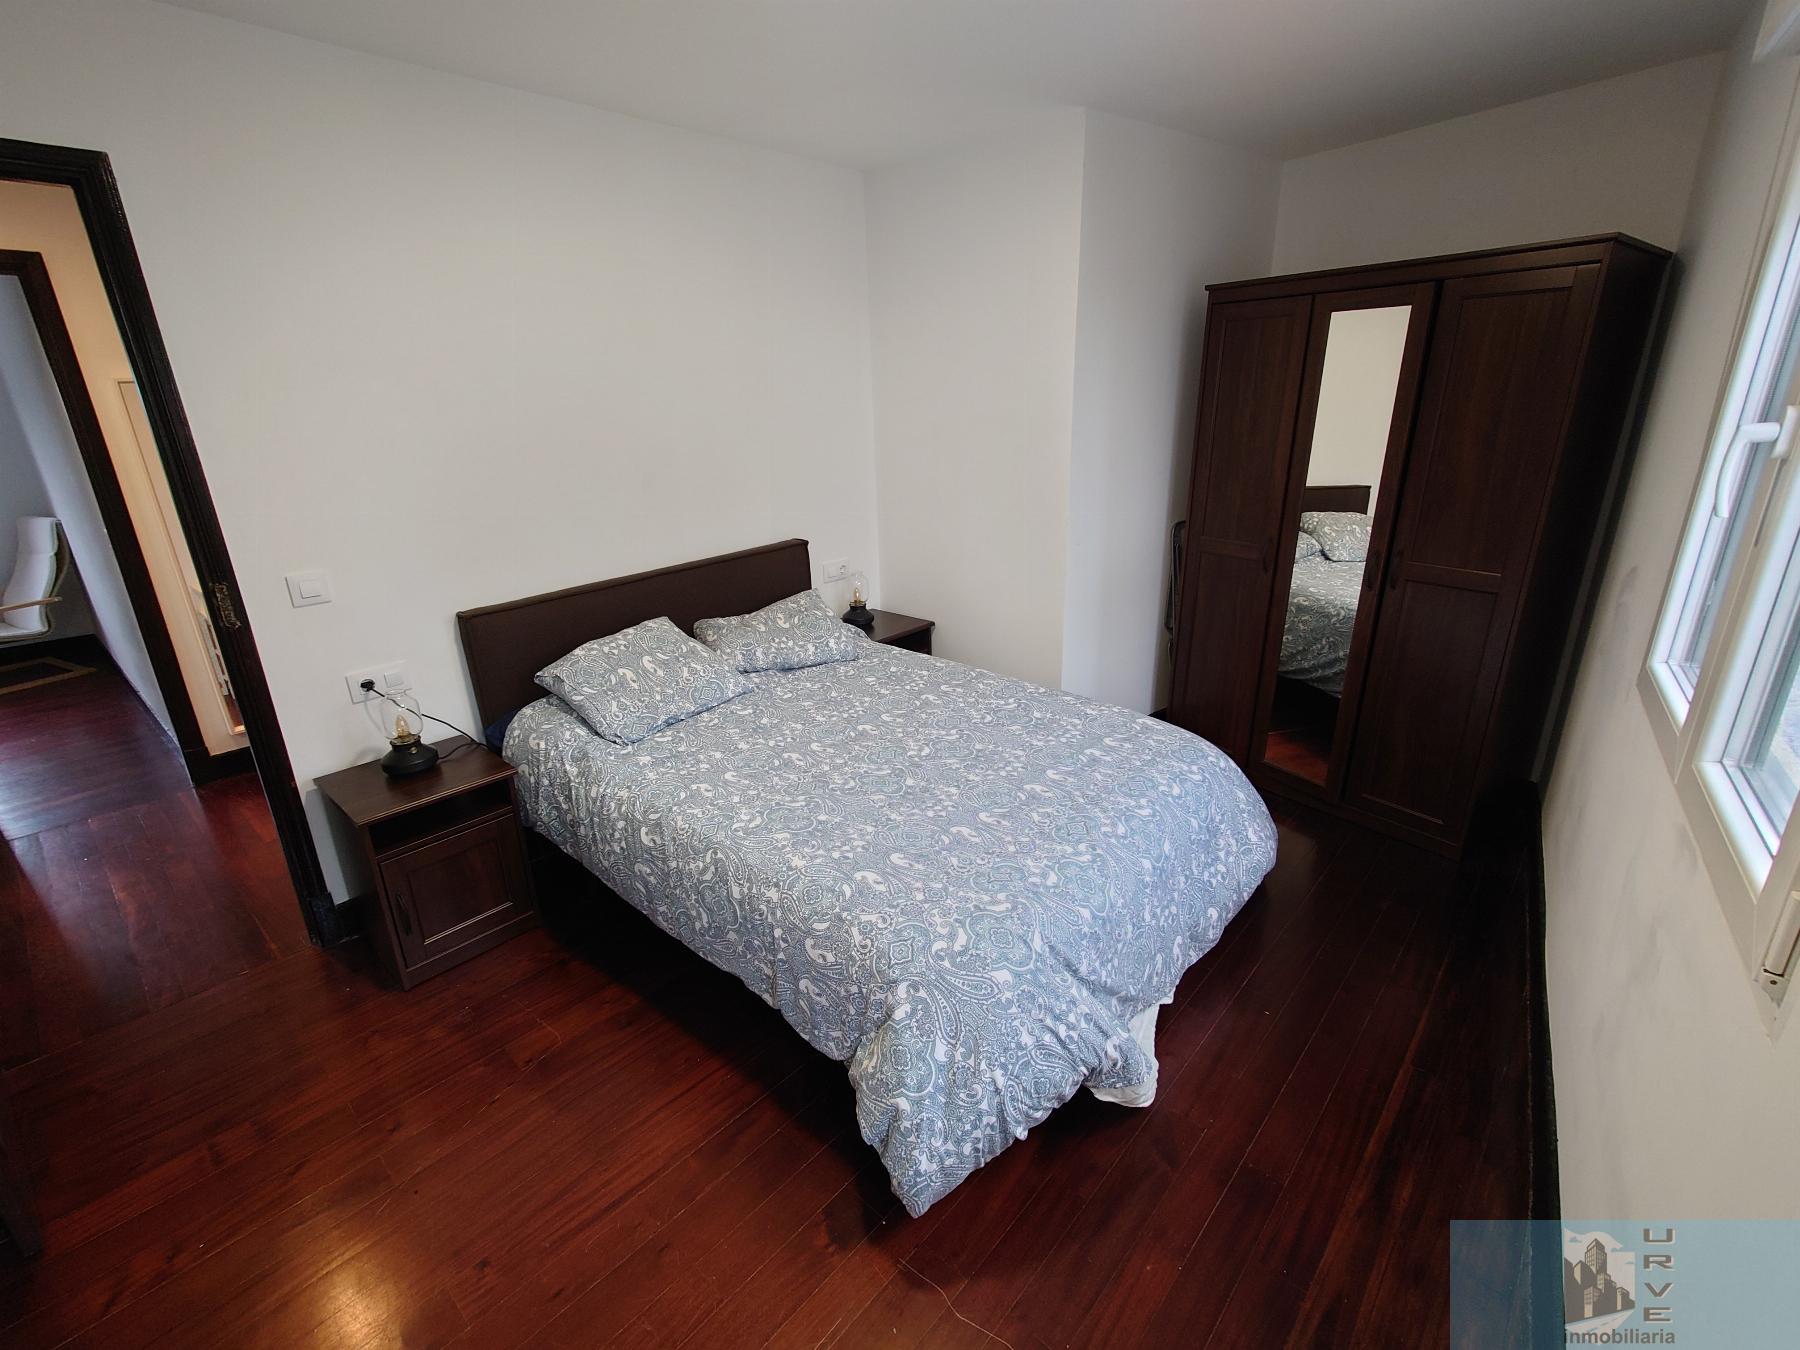 For rent of flat in Santiago de Compostela